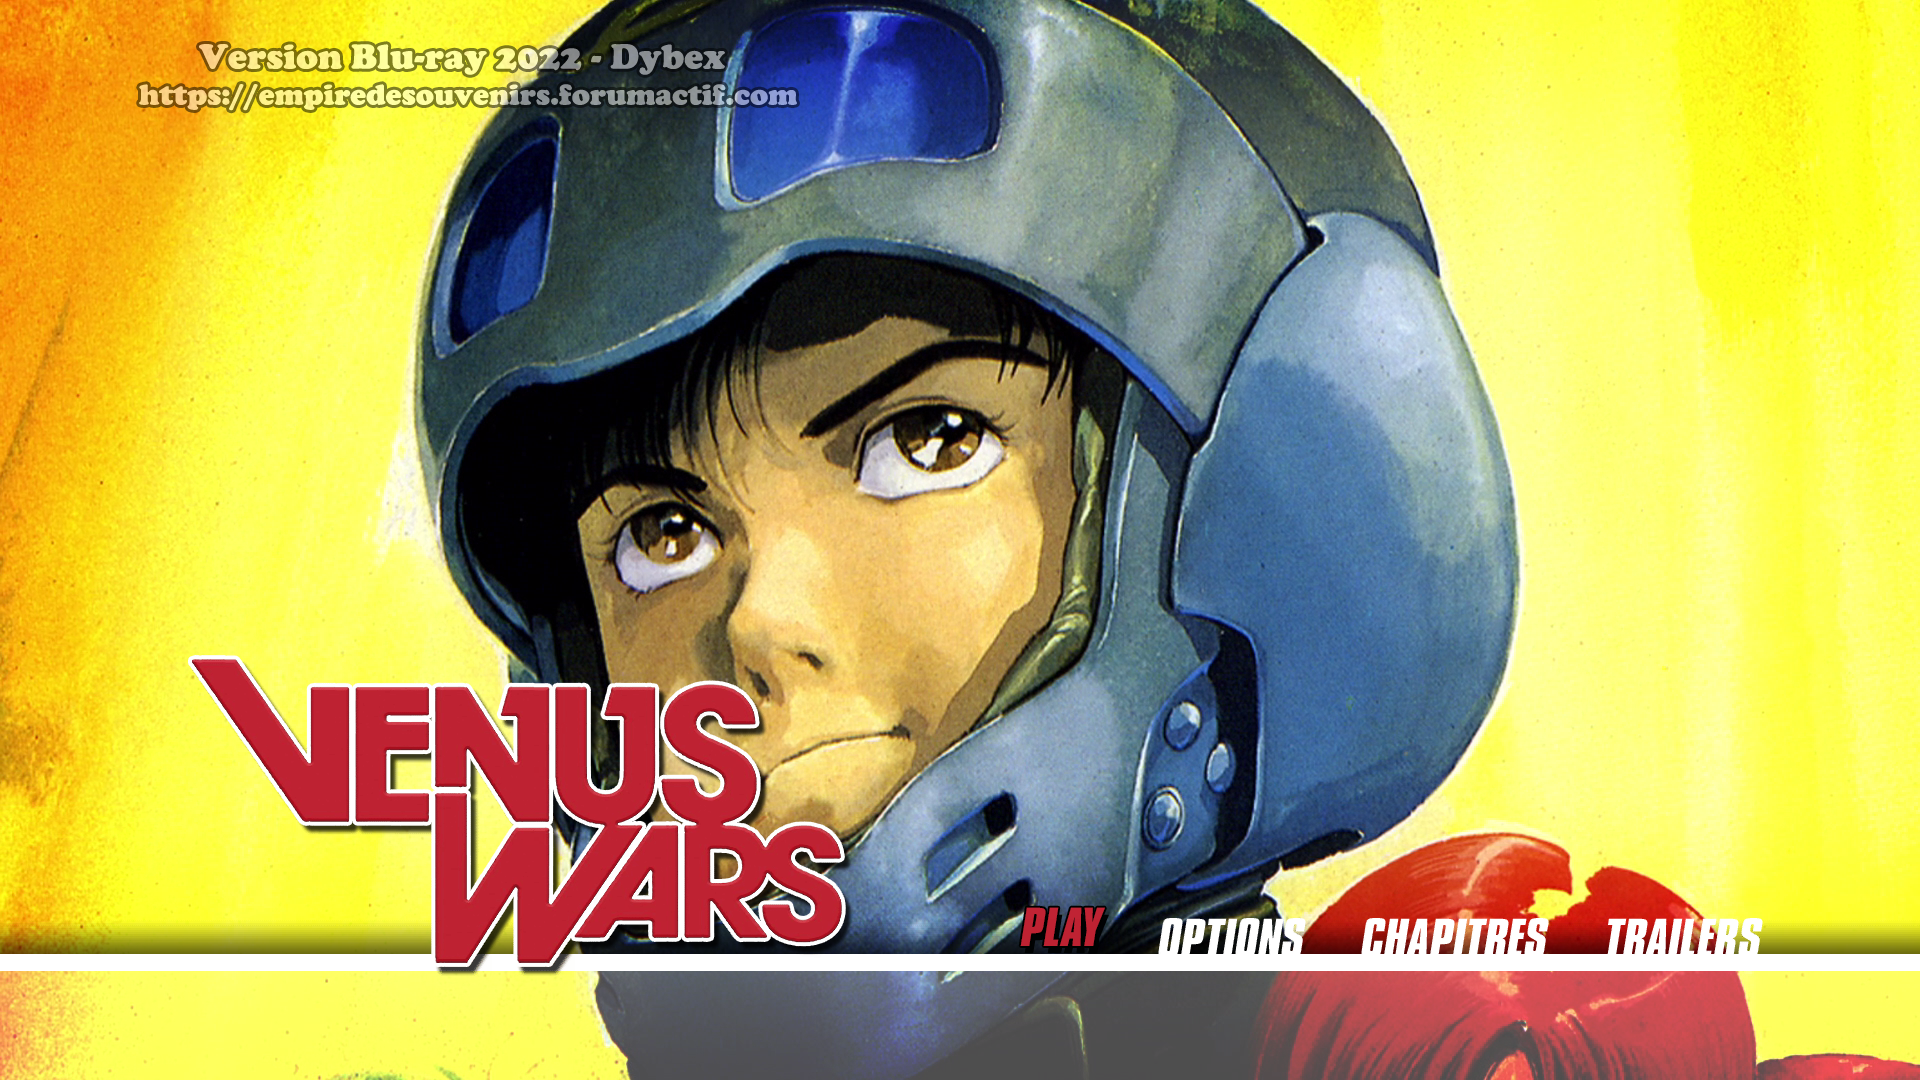 Review Blu-ray - Venus Wars - Dybex B86t